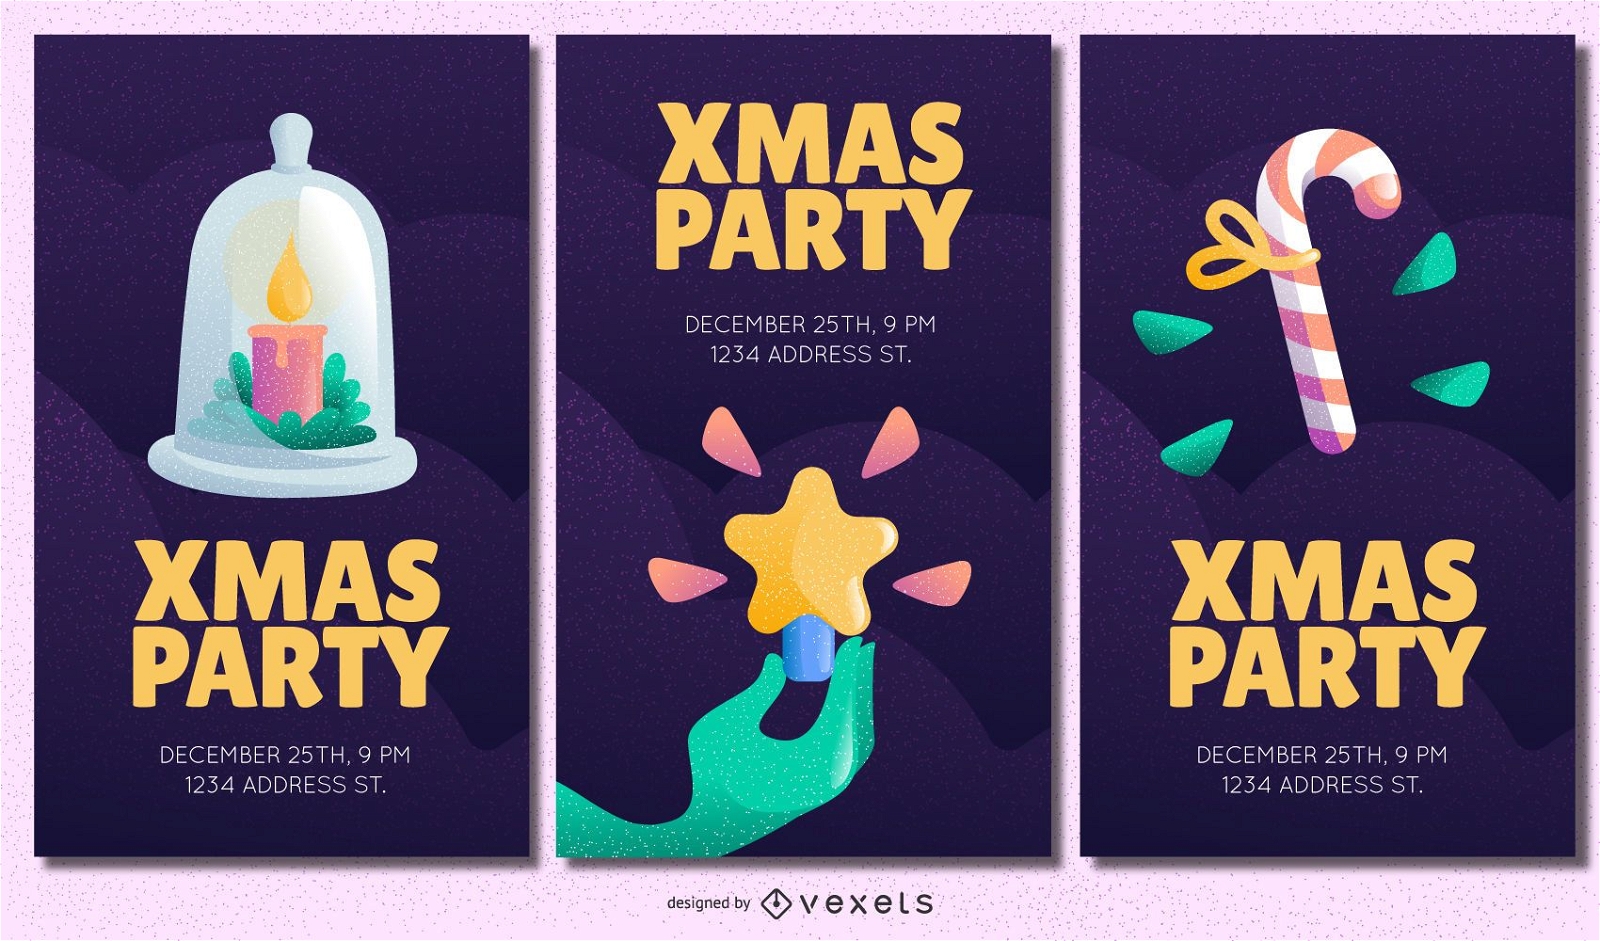 Xmas party invitations set